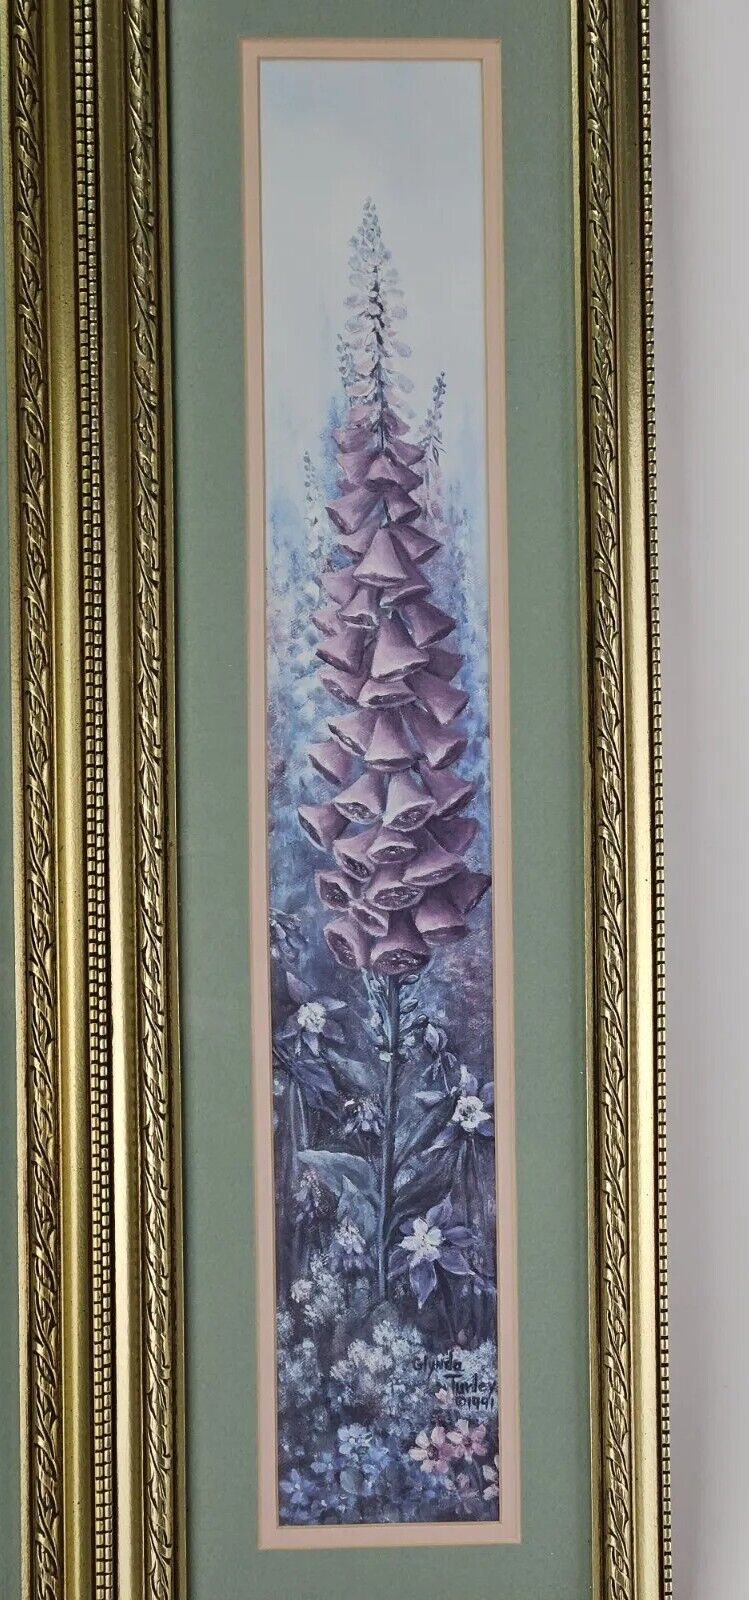 1991 Vintage Glynda Turley Print-Blue Flowers  Signed Framed Lot